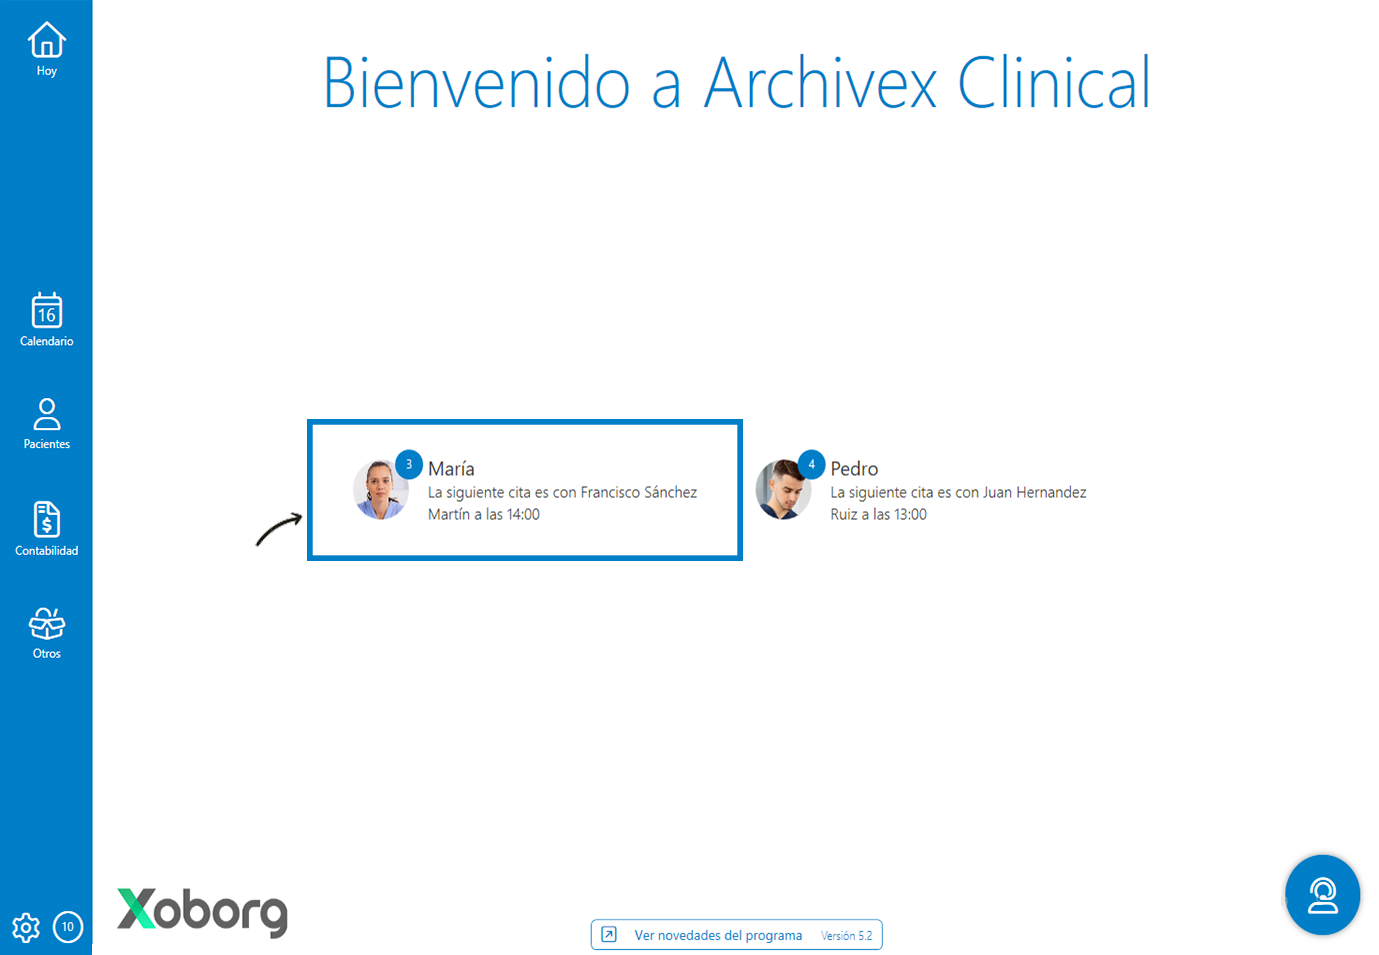 Cuentas de los profesionales en Archivex Clinical